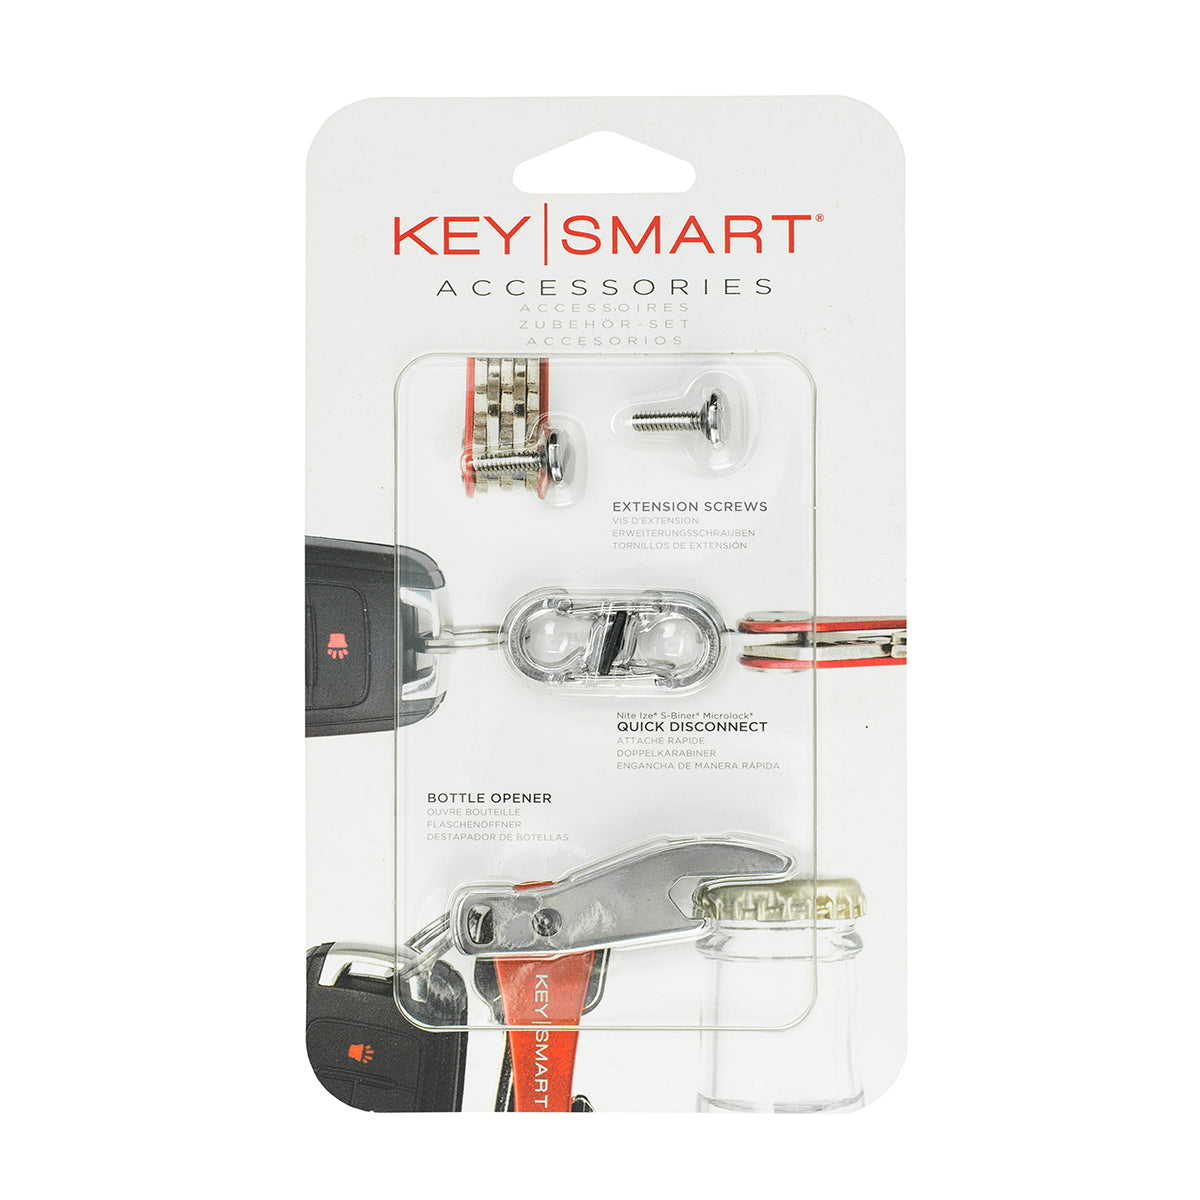 KeySmart | Accessories Kit